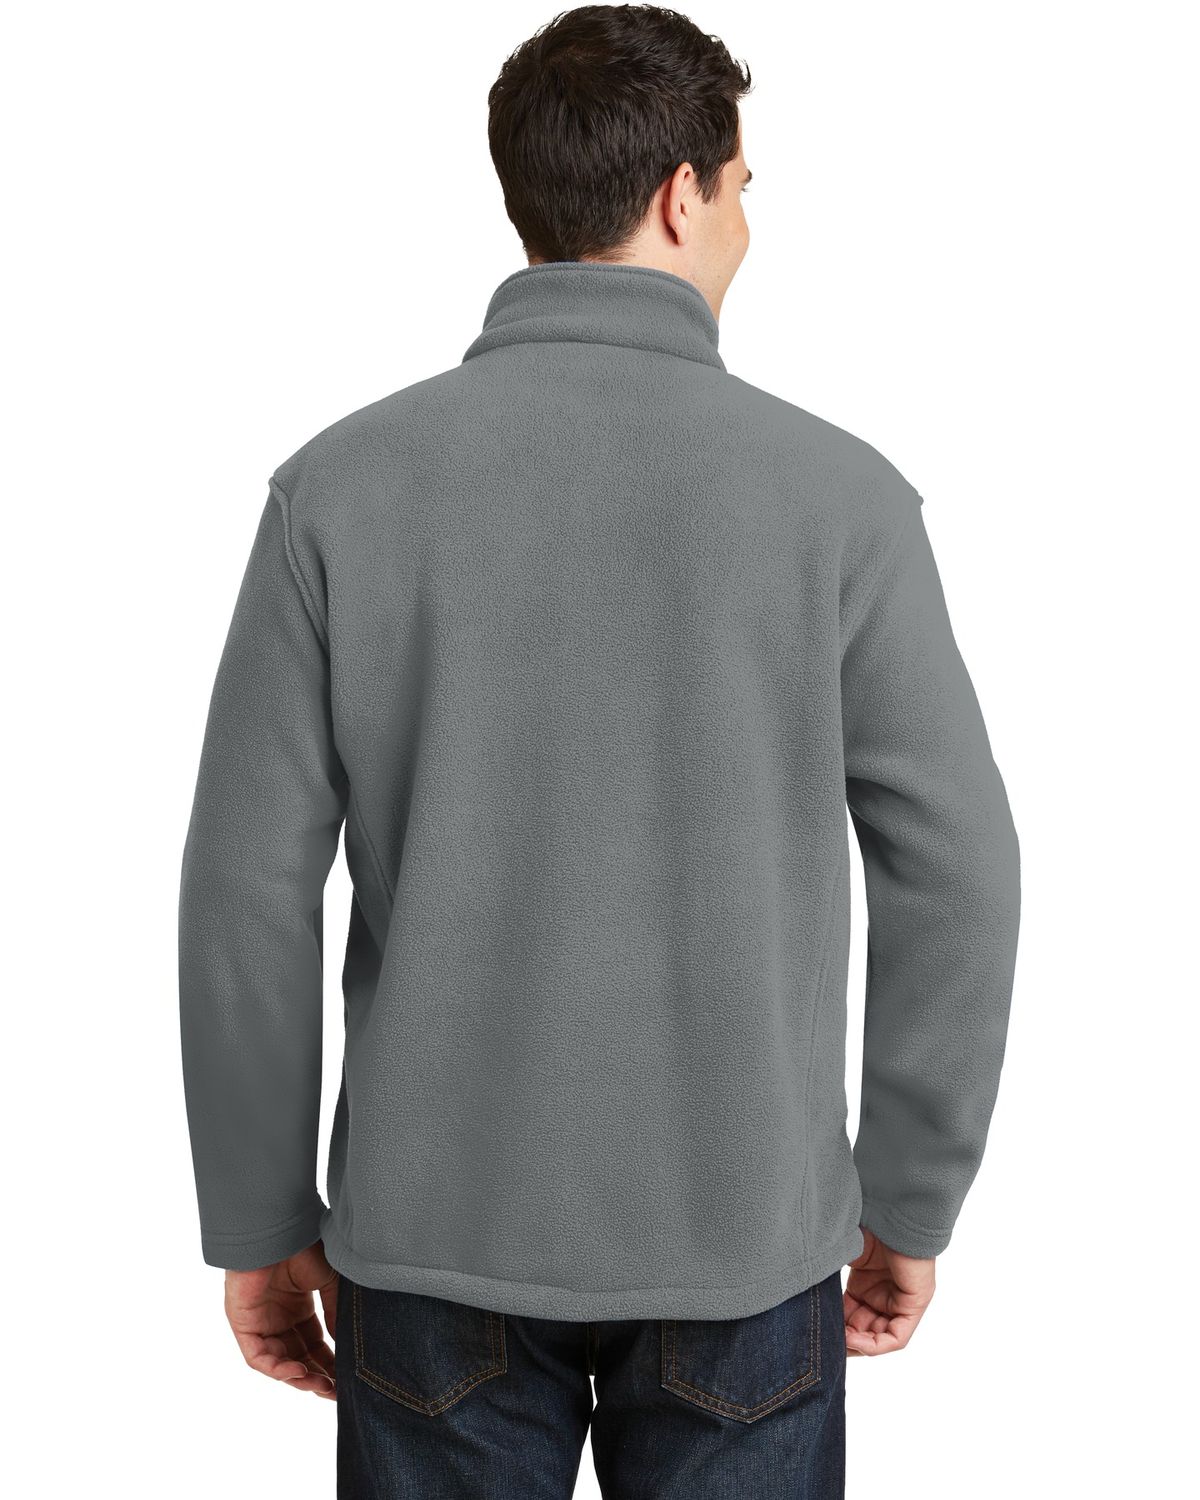 'Port Authority F217 Men’s Value Fleece Jacket'